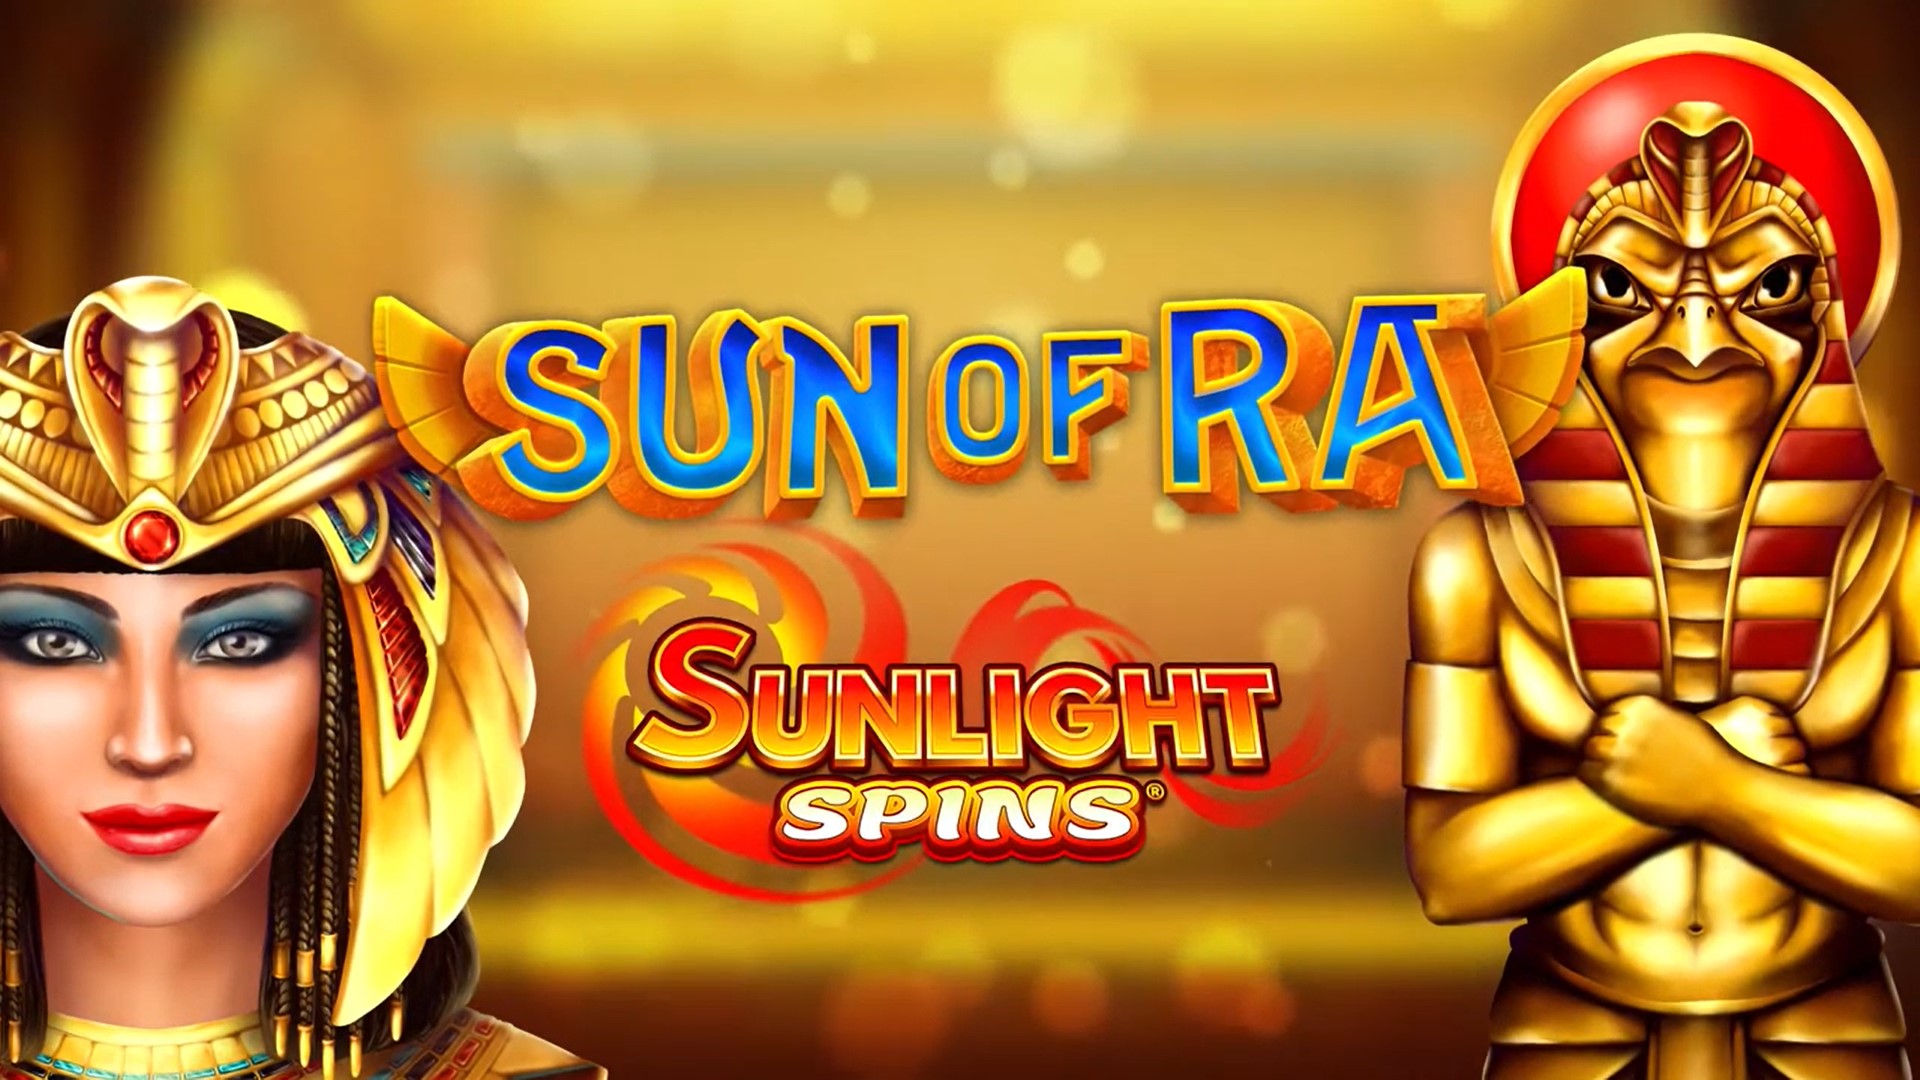 Sun of Ra RubyPlay